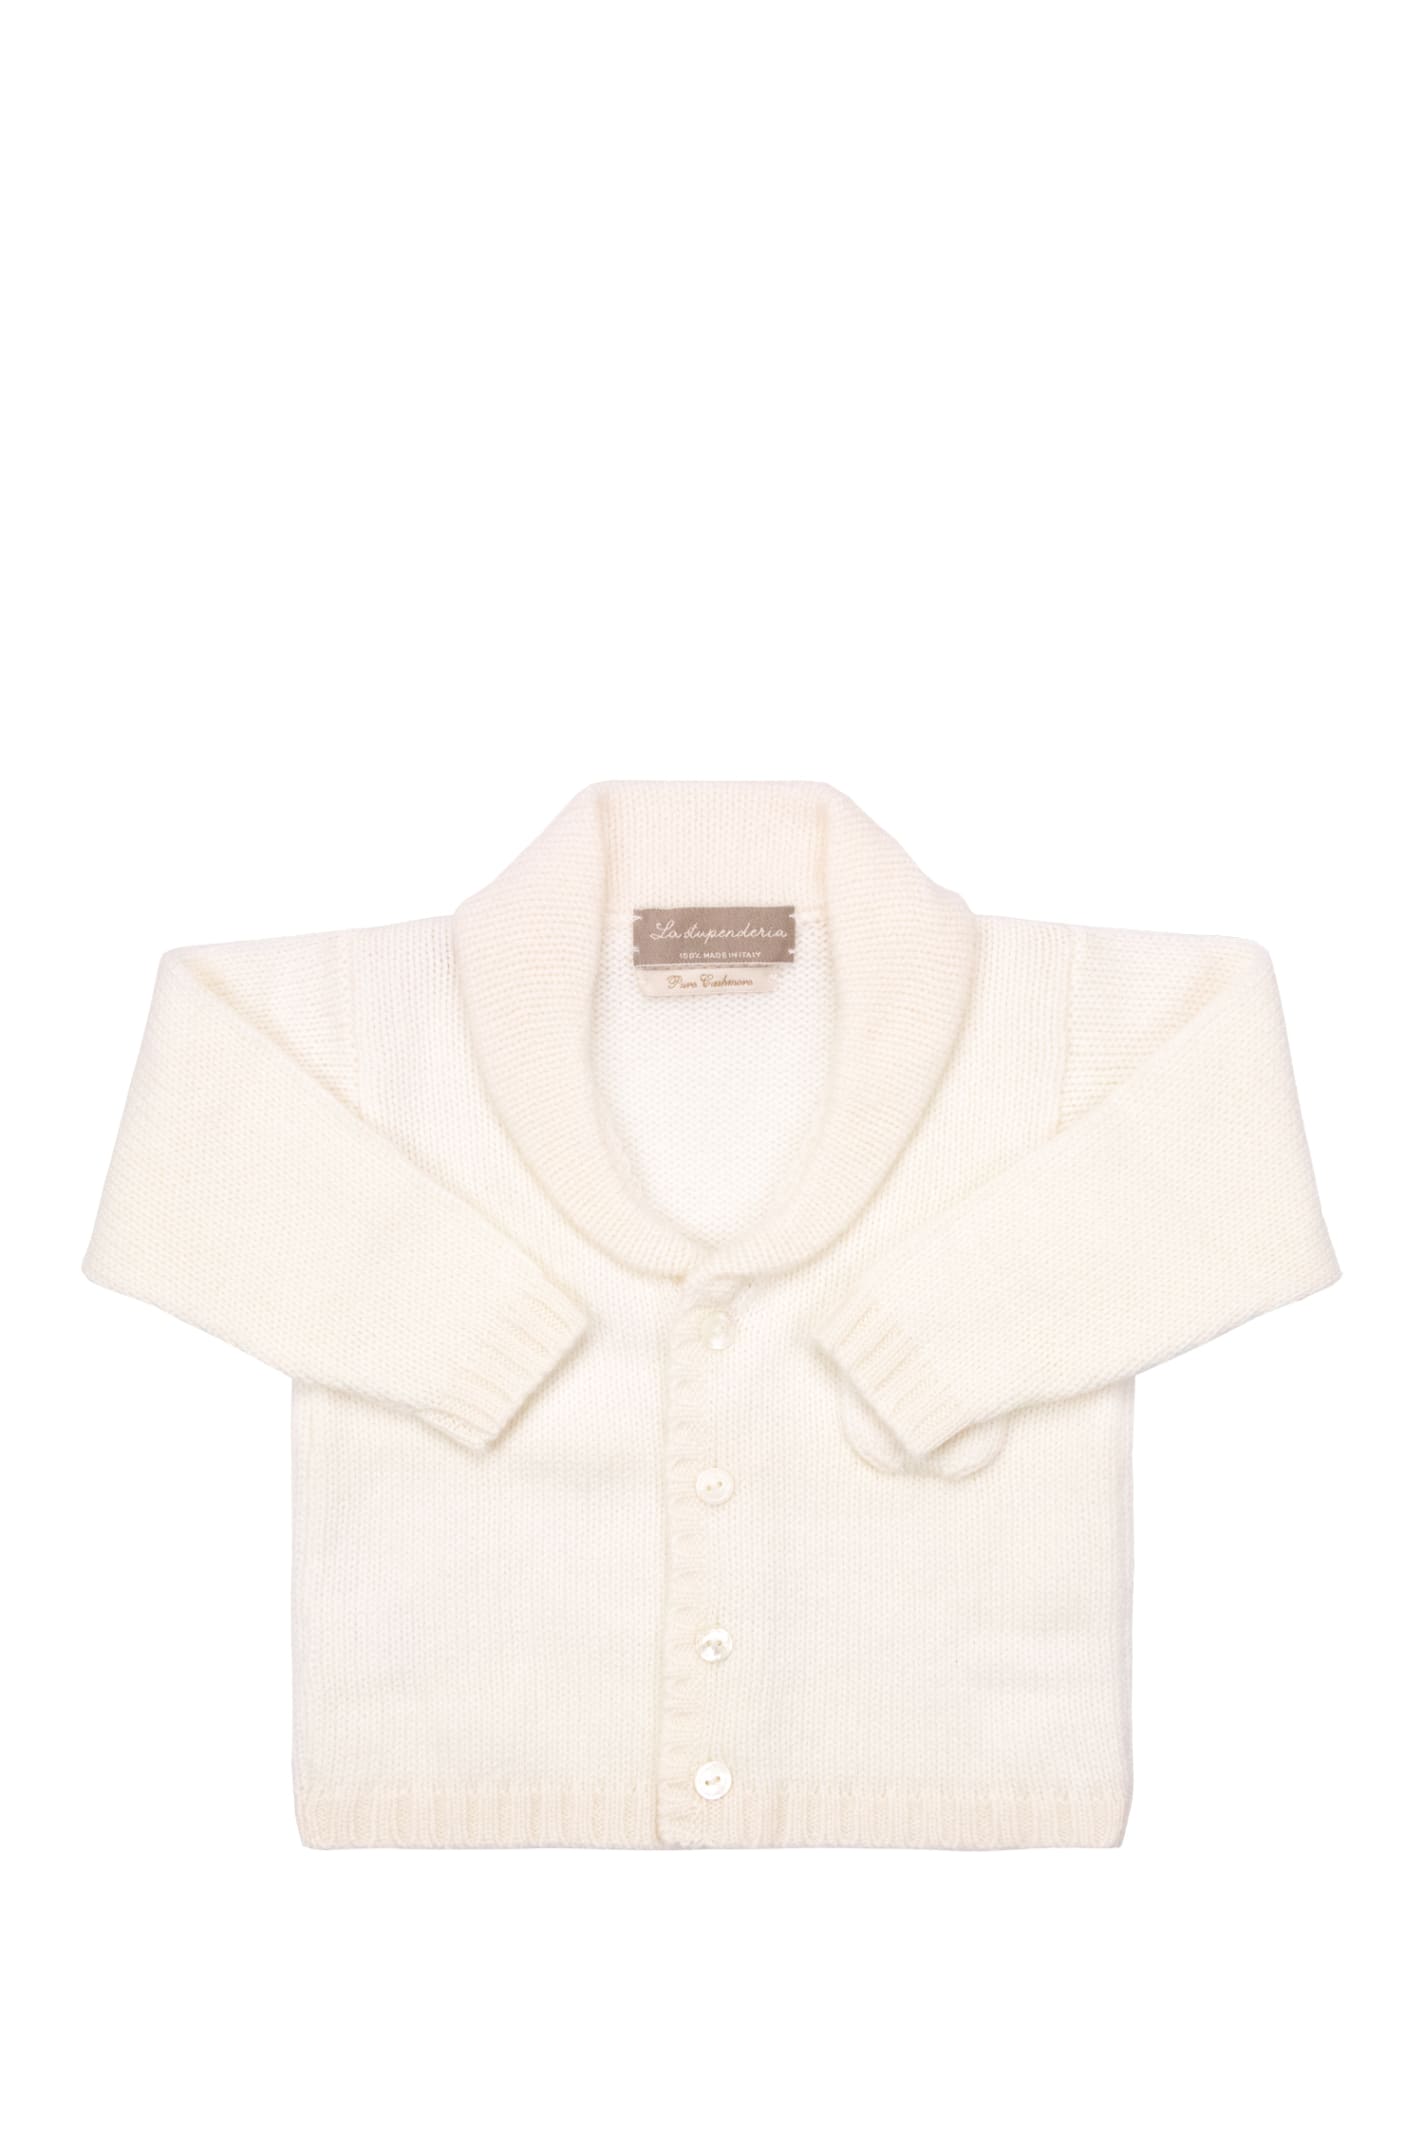 La Stupenderia Babies' Cashmere Cardigan In White